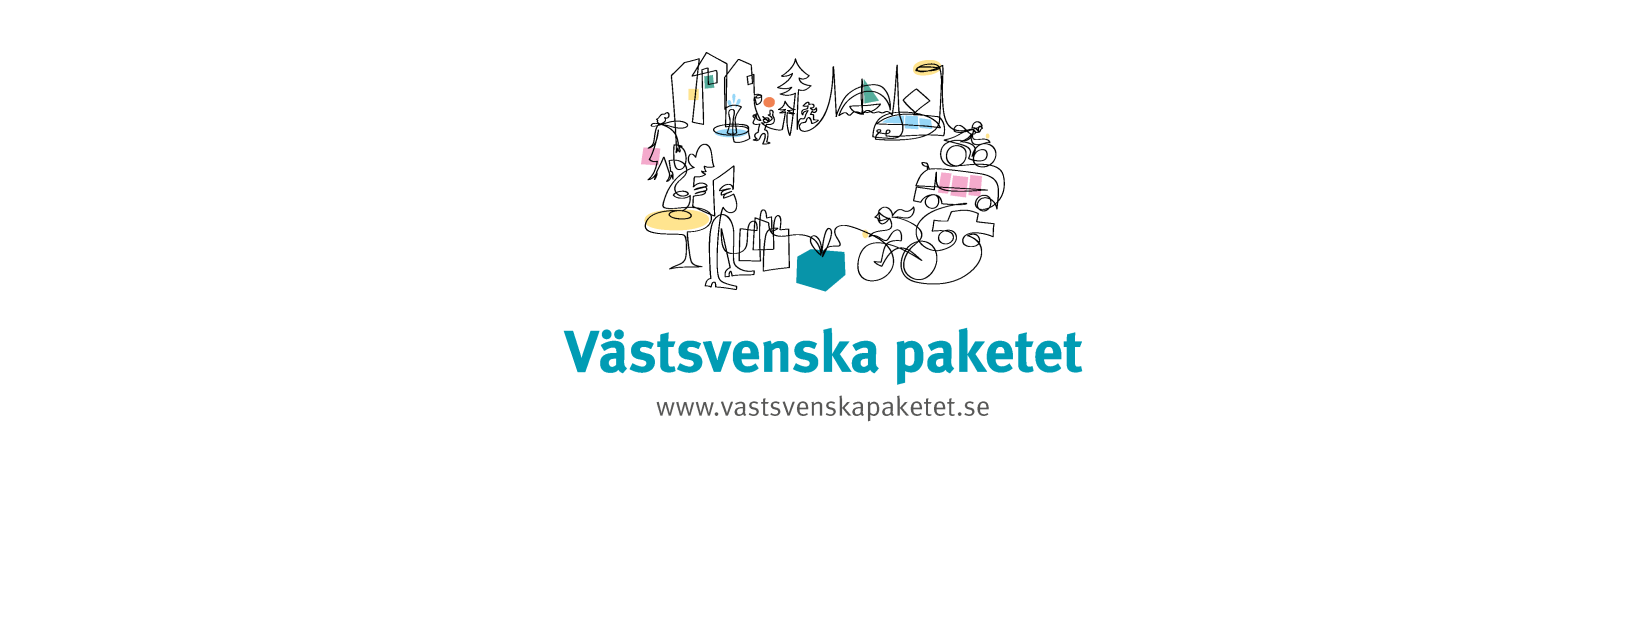 Dokumenttitel: Faktaunderlag Västlänken politiska förankring och juridisk status 160219 Informationsmaterial från Västsvenska paketet 19